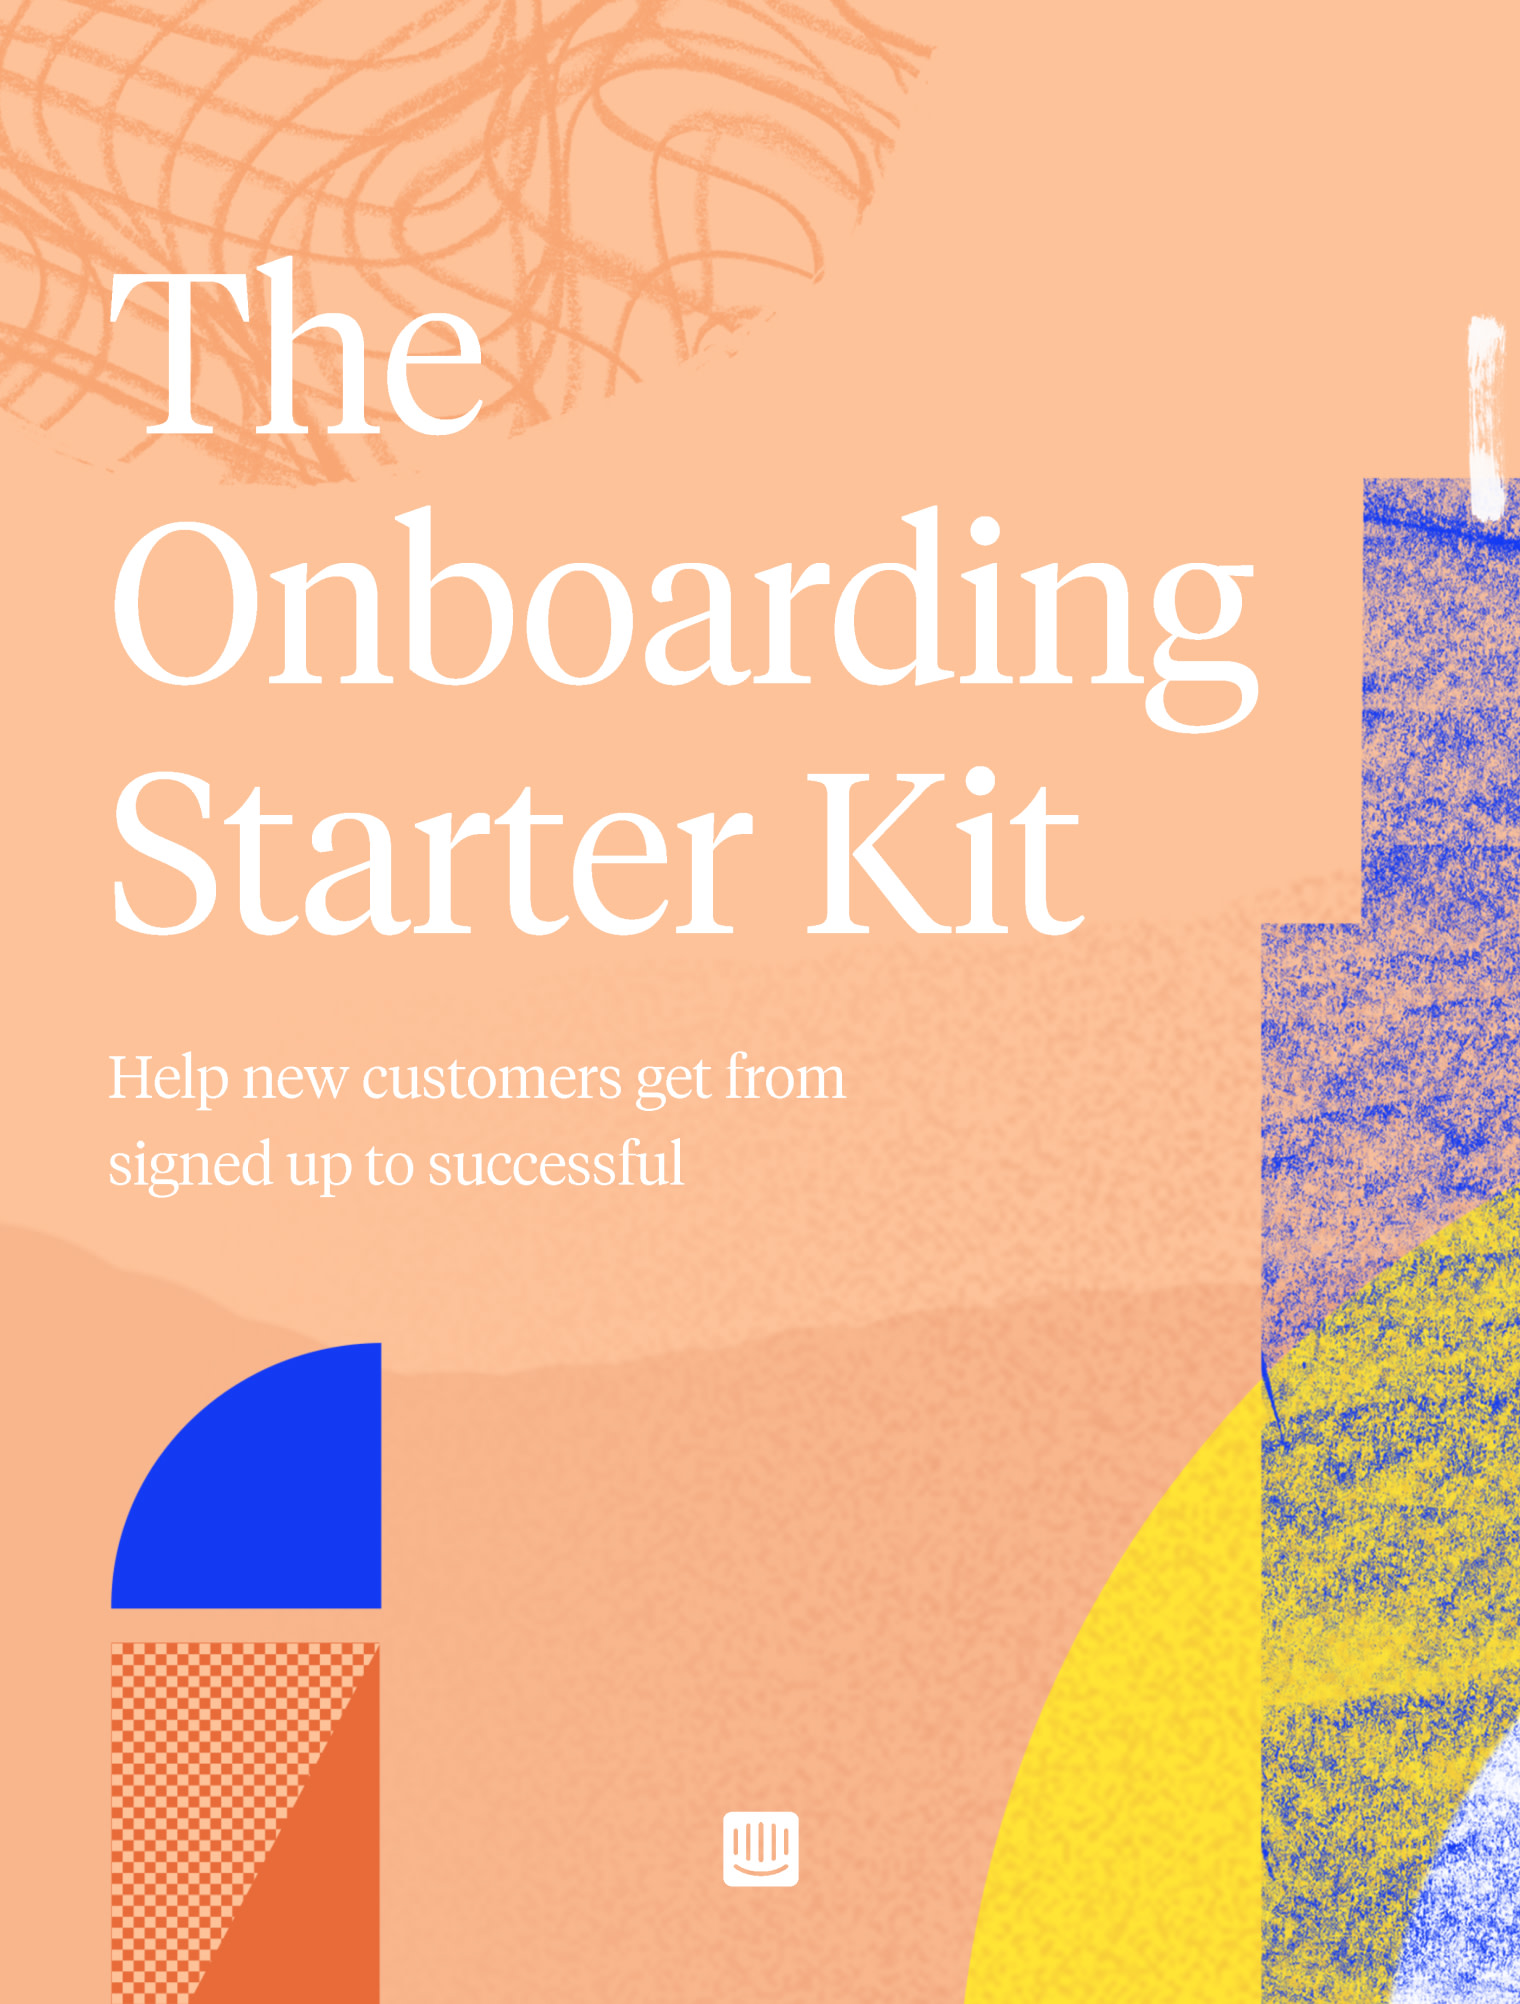 The Onboarding Starter Kit